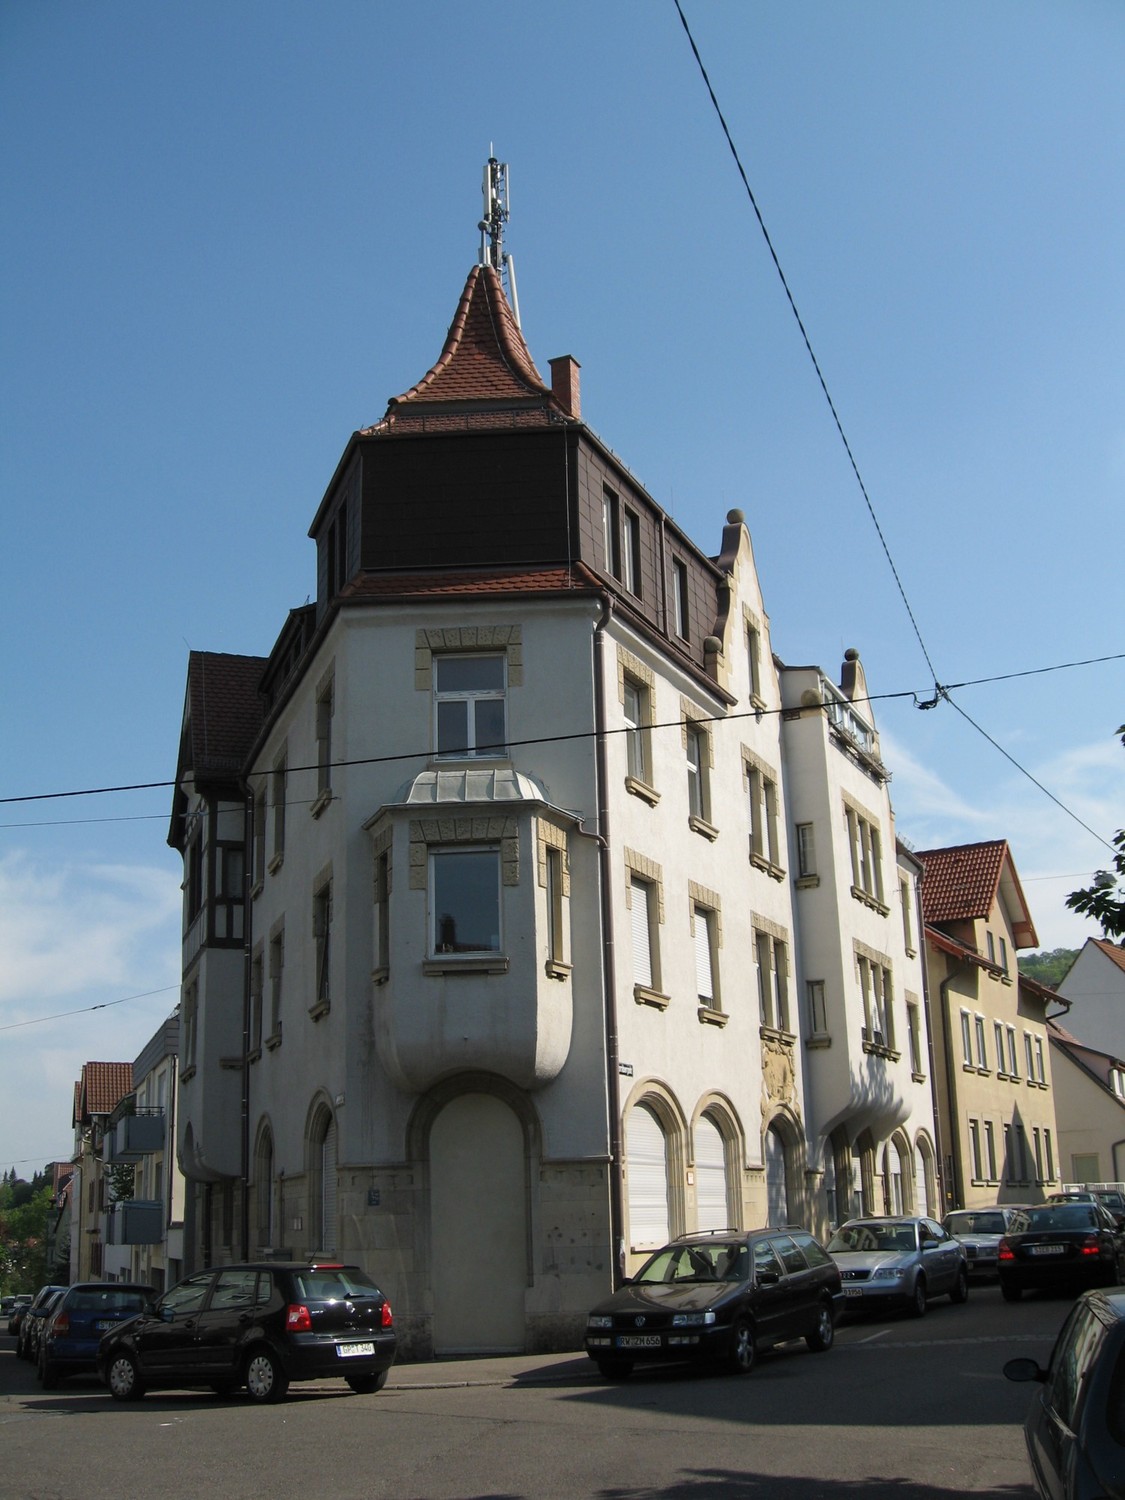 Komplett neu renovierte tolle 3,5-Zi-Wohnung in Stuttgart-Gaisburg mit Wintergarten und Altbaucharme